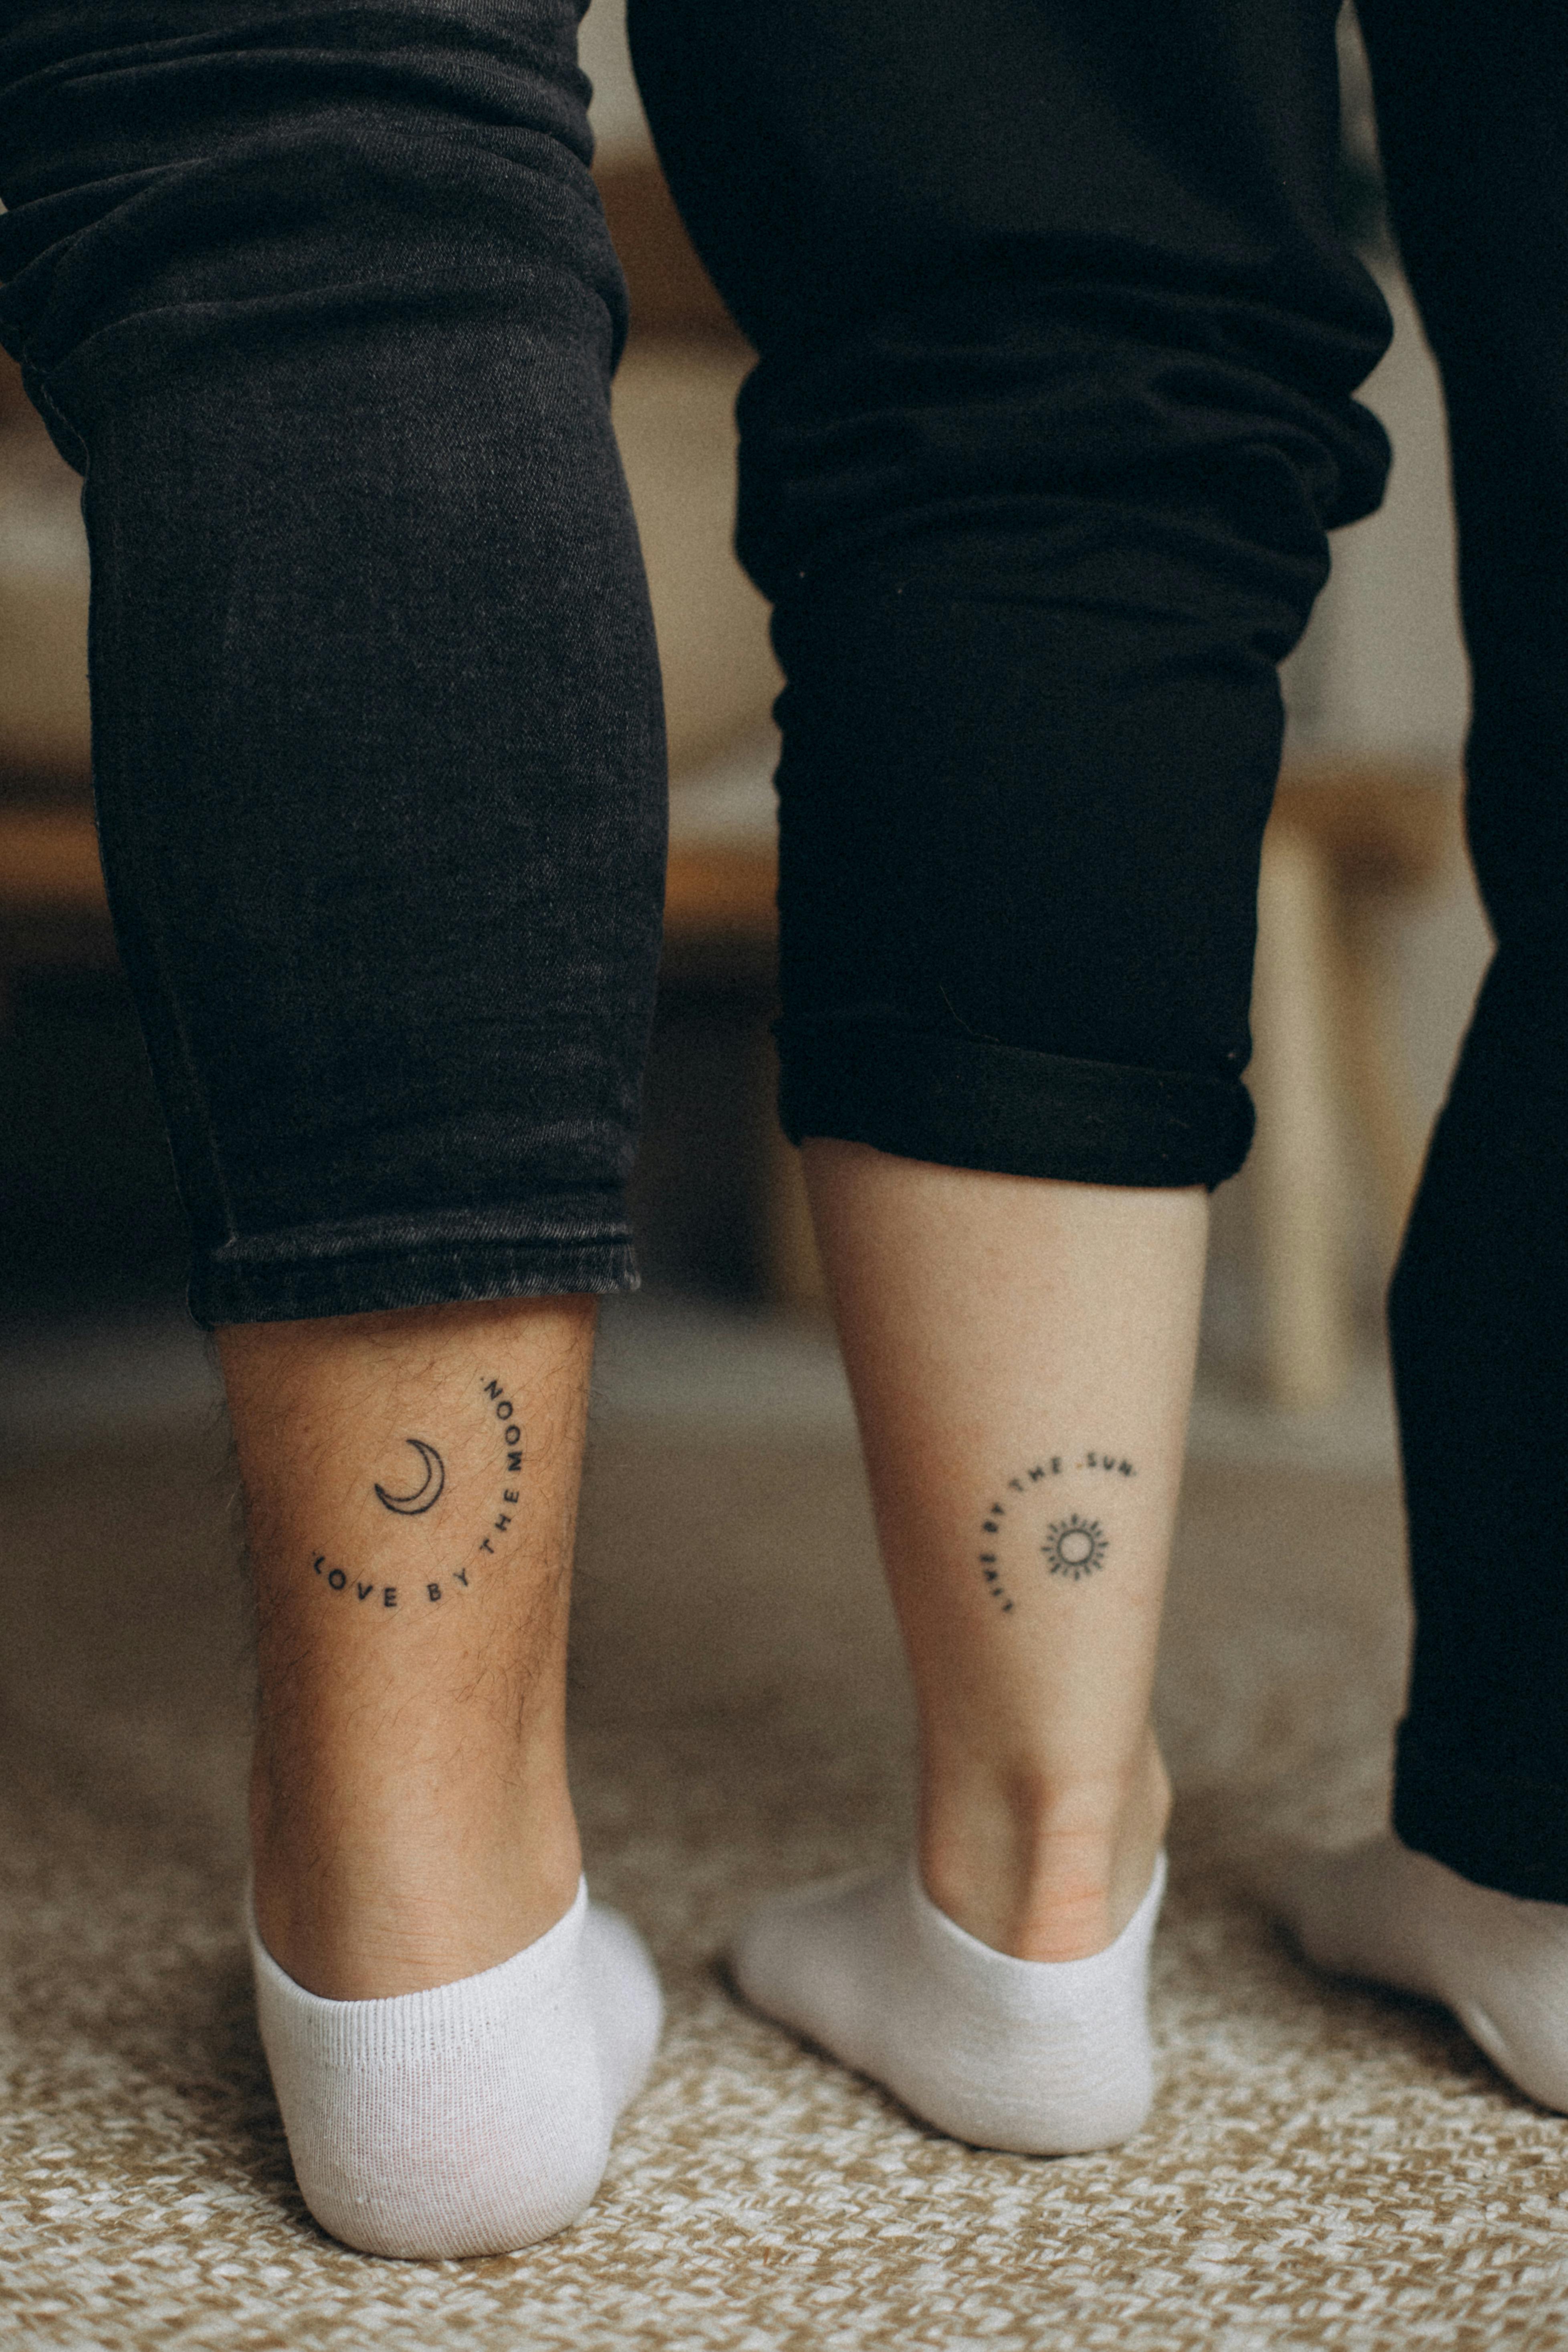 i love u forever @NewJeans #newjeans #tattoo | TikTok